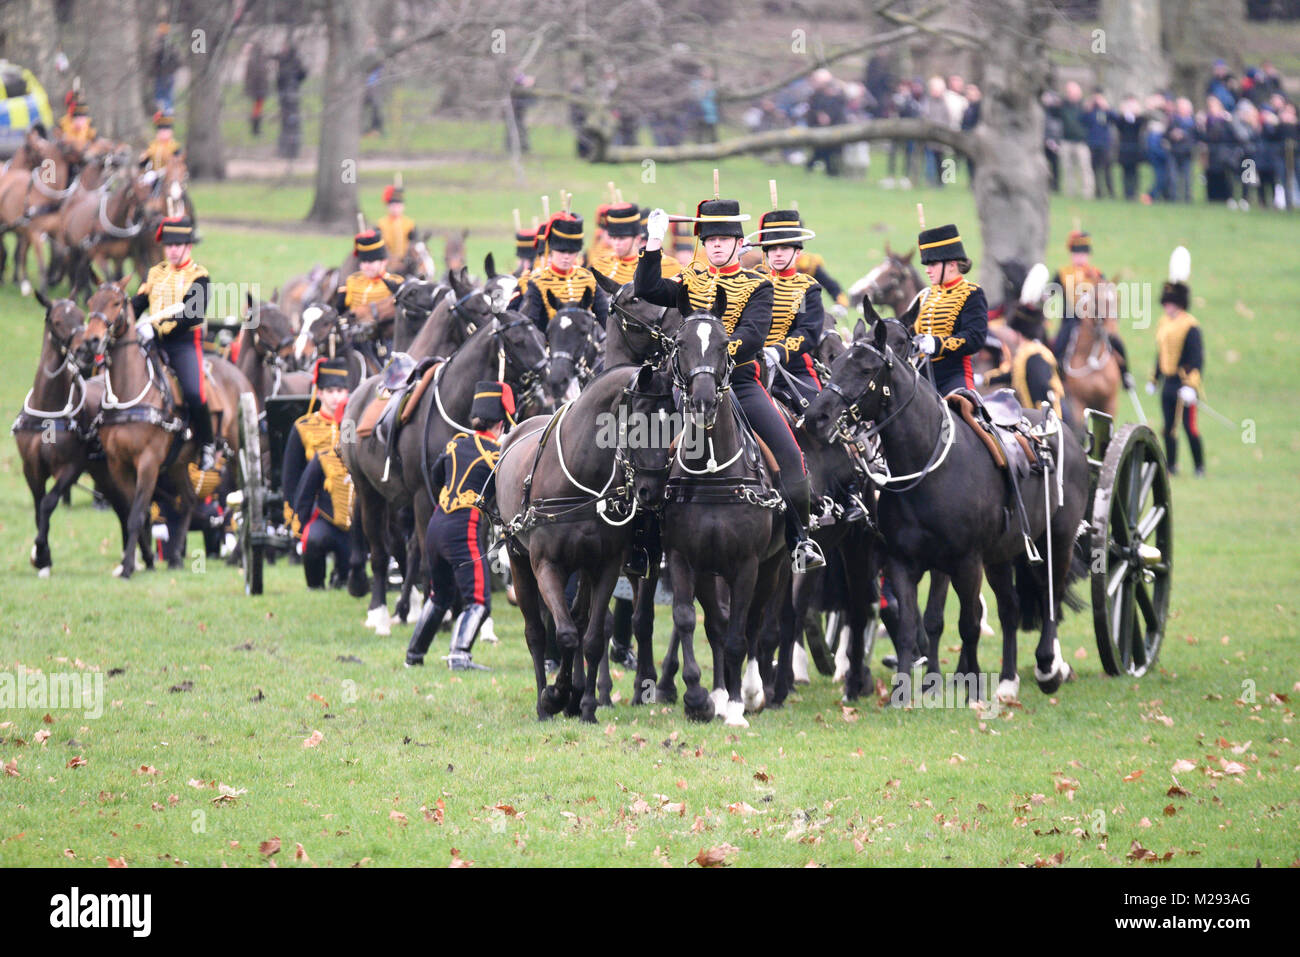 Una 41-gun salute era detenuto da il re della truppa Royal Artiglieria a cavallo nel parco verde, vicino a Buckingham Palace, a segnare la data della Regina Elisabetta II salita al trono - che si è verificato il 6 febbraio 1952 in seguito alla morte del re George VI Foto Stock